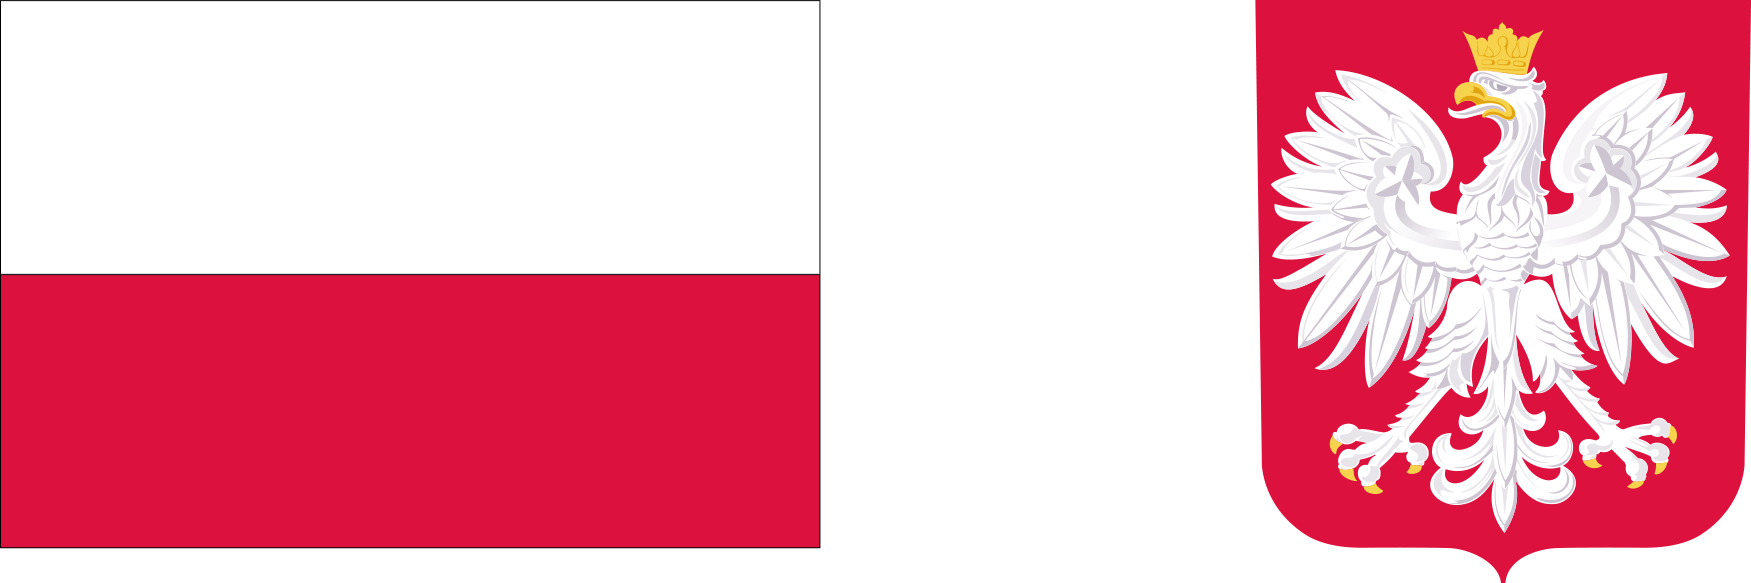 Flaga Polski podzielona na dwa poziome pasy: górny biały, dolny czerwony, obok herb Polski z białym orłem w koronie na czerwonym tle.